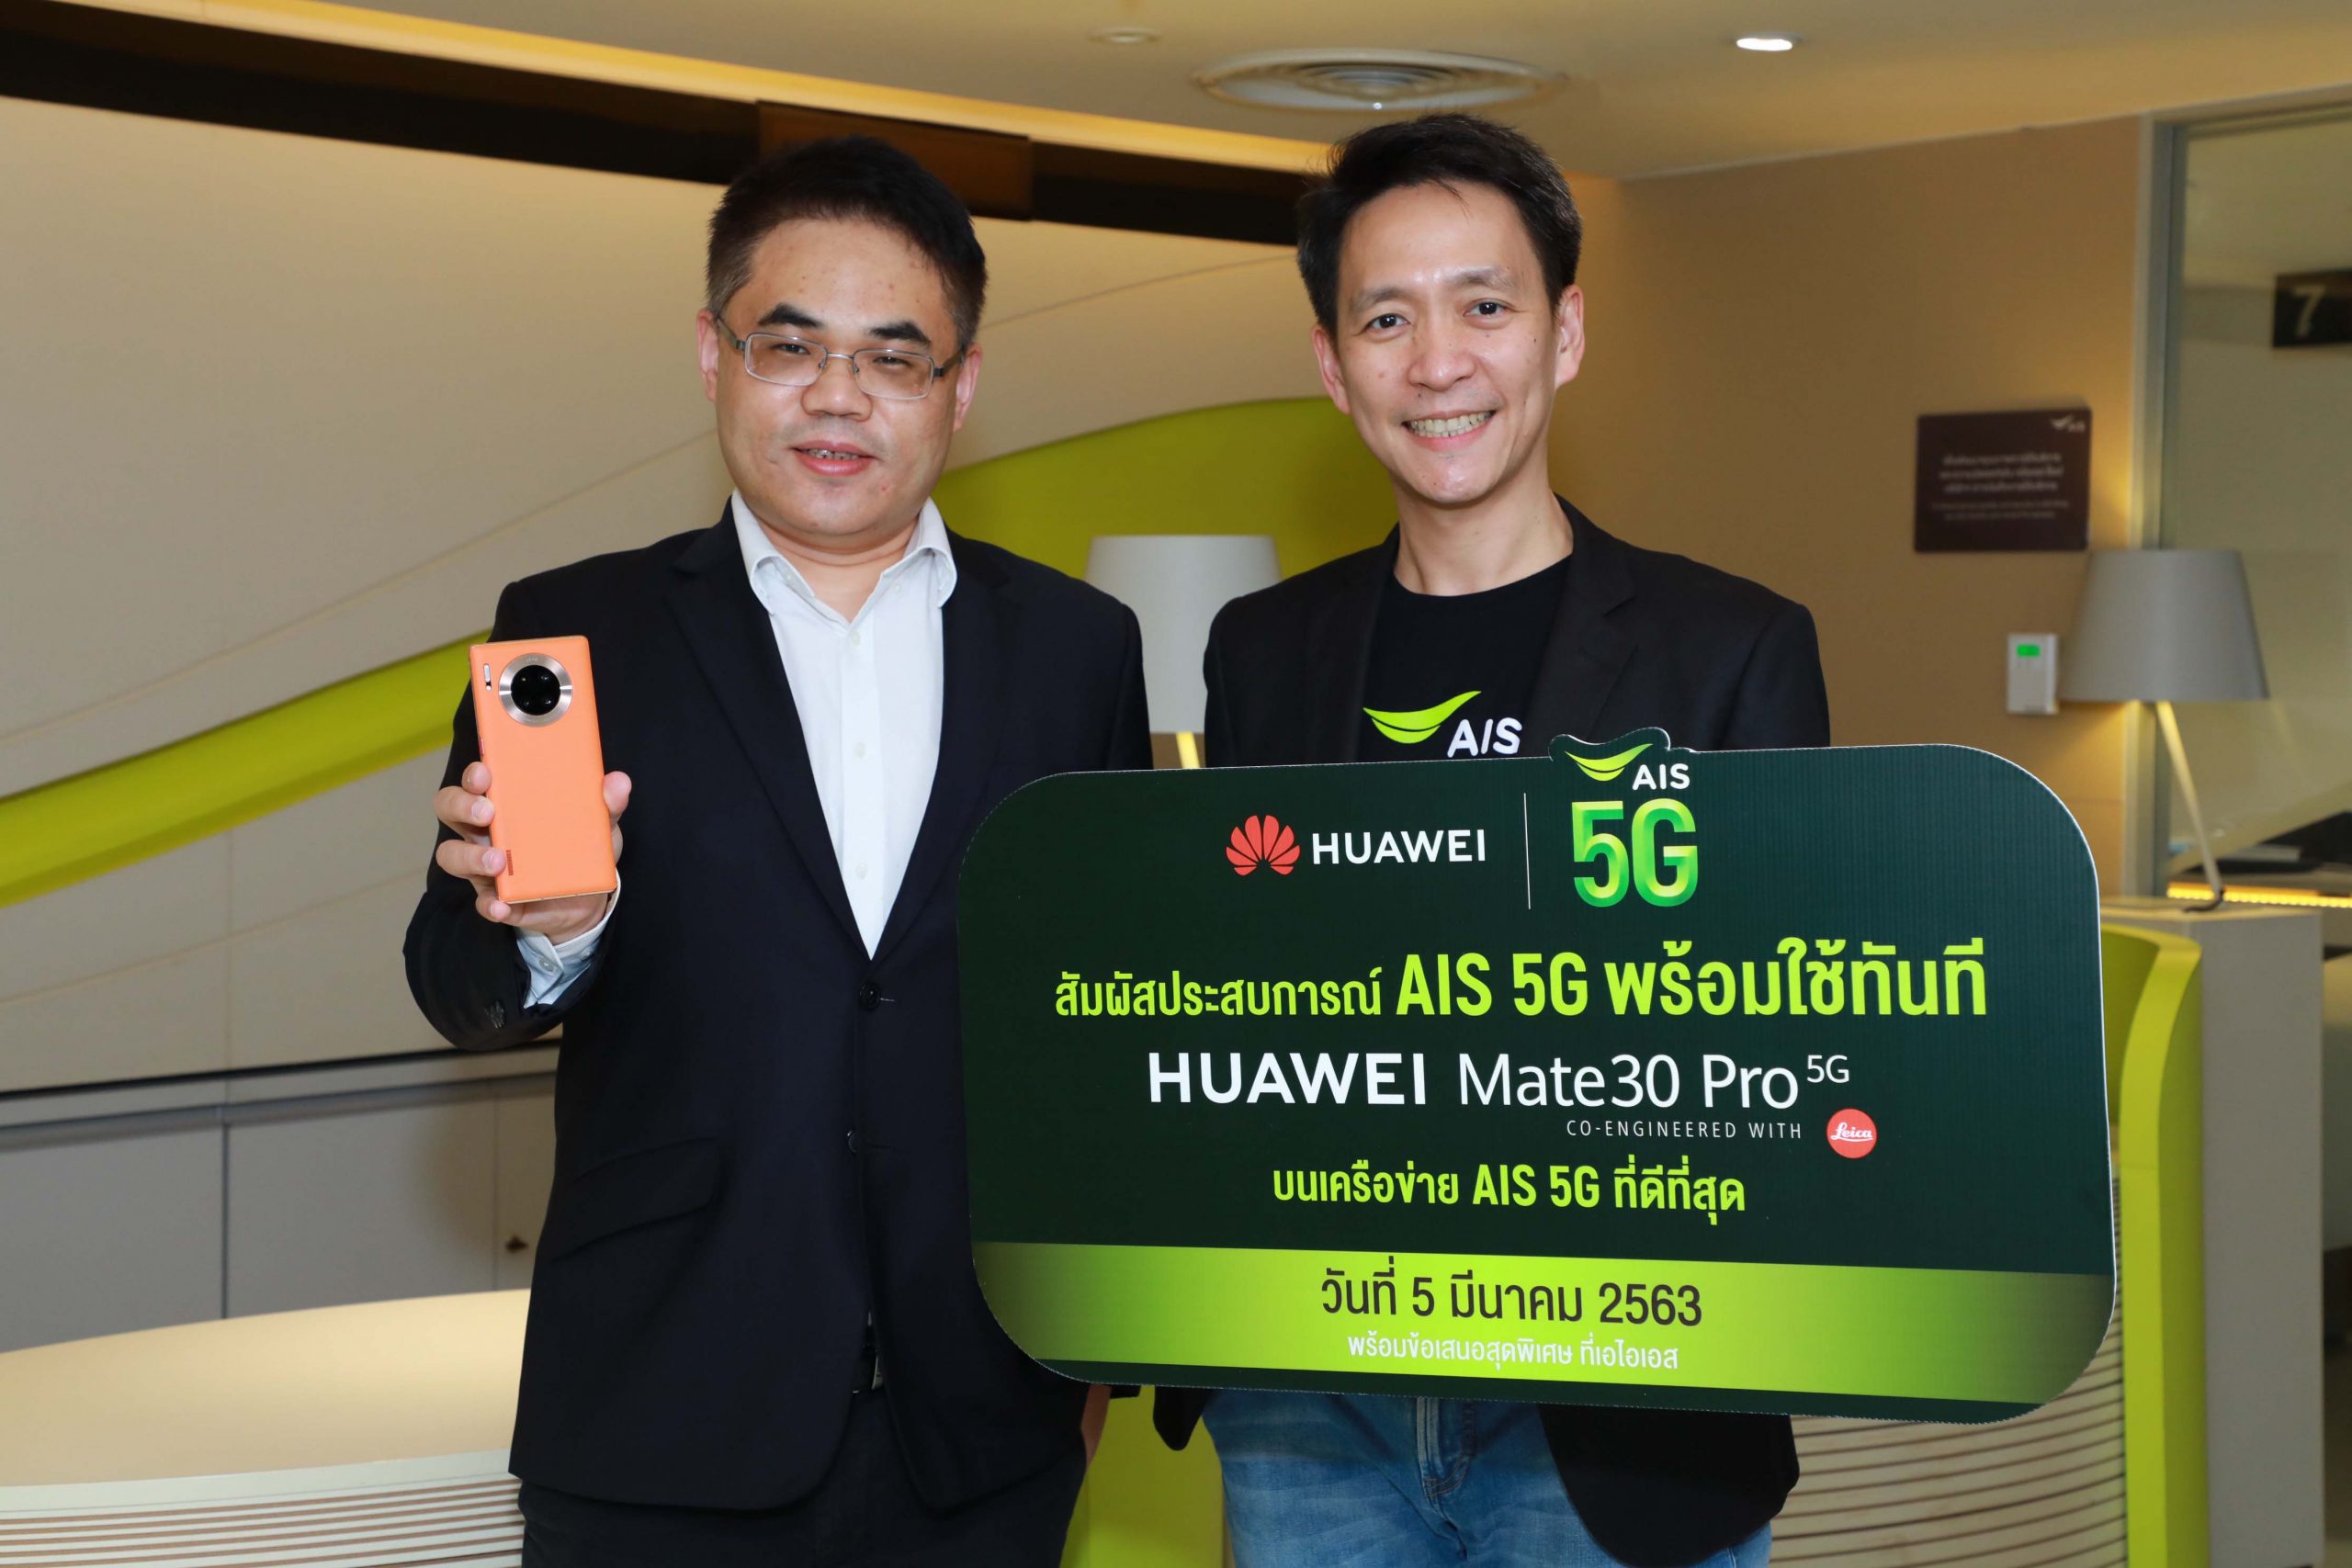 ภาพข่าว: AIS ให้คนไทยสัมผัสประสบการณ์ 5G แบบพร้อมใช้ทันที! วันที่ 5 มีนาคม นี้บนสมาร์ทโฟนสุดล้ำ Huawei Mate 30 Pro 5G รายแรกรายเดียวในไทย